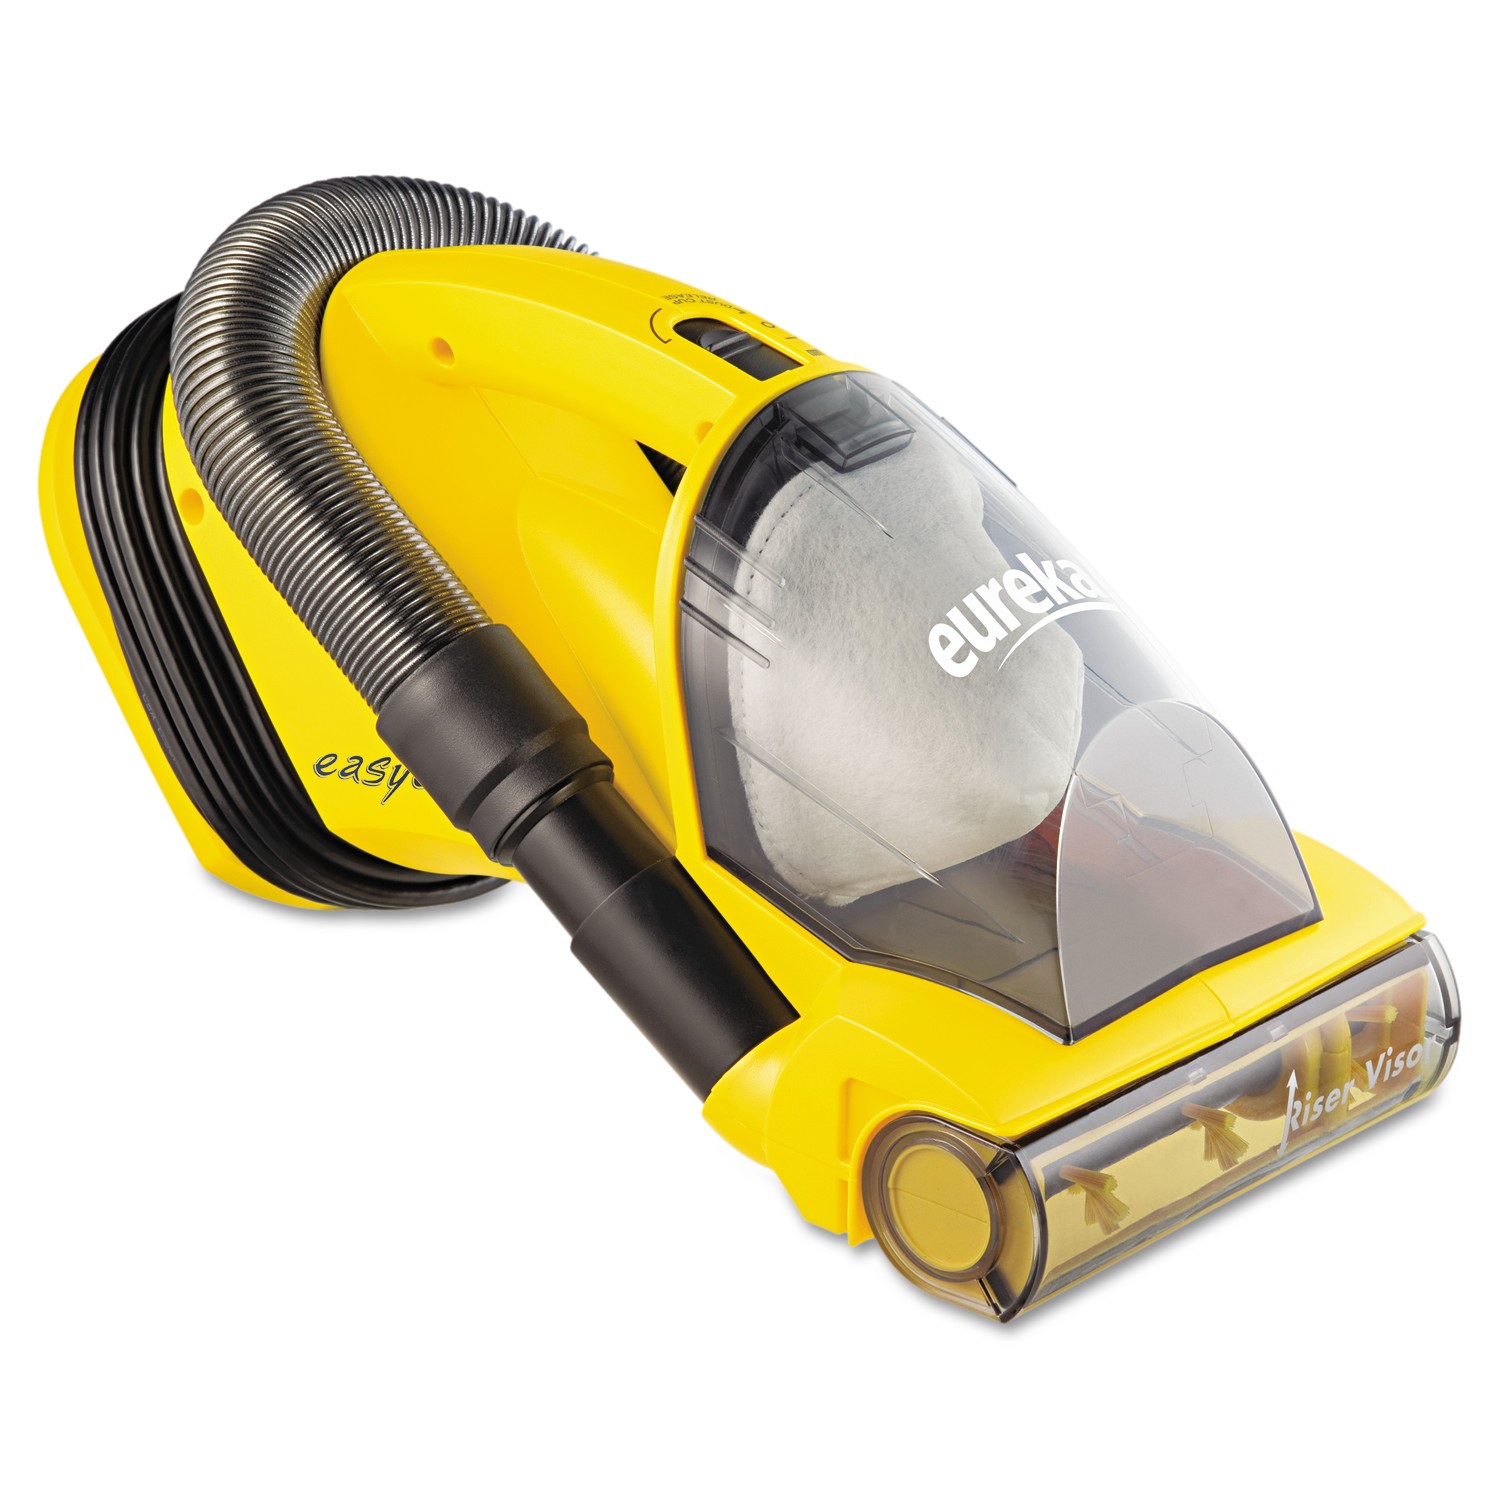 Eureka EasyClean Lightweight Handheld Vacuum Cleaner, Yellow 71B - image 1 of 5